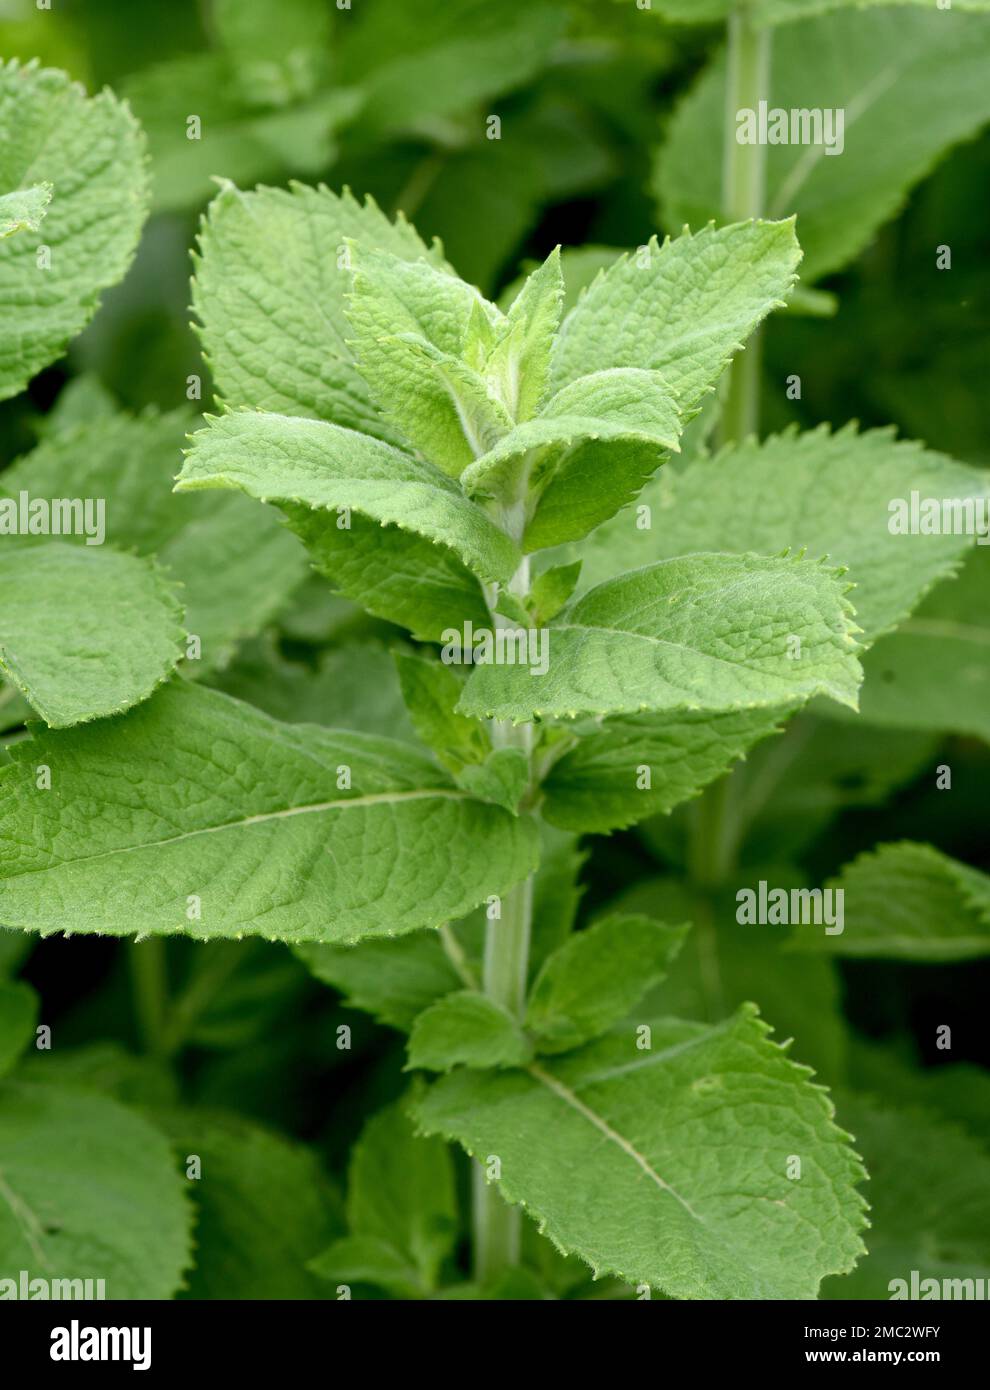 Pfefferminze, Mentha piperita, ist eines der wichtigsten Heilpflanzen und Gewürzkräuter in der Küche und Heilmedizin. Pfefferminze, Mentha piperita, Stockfoto